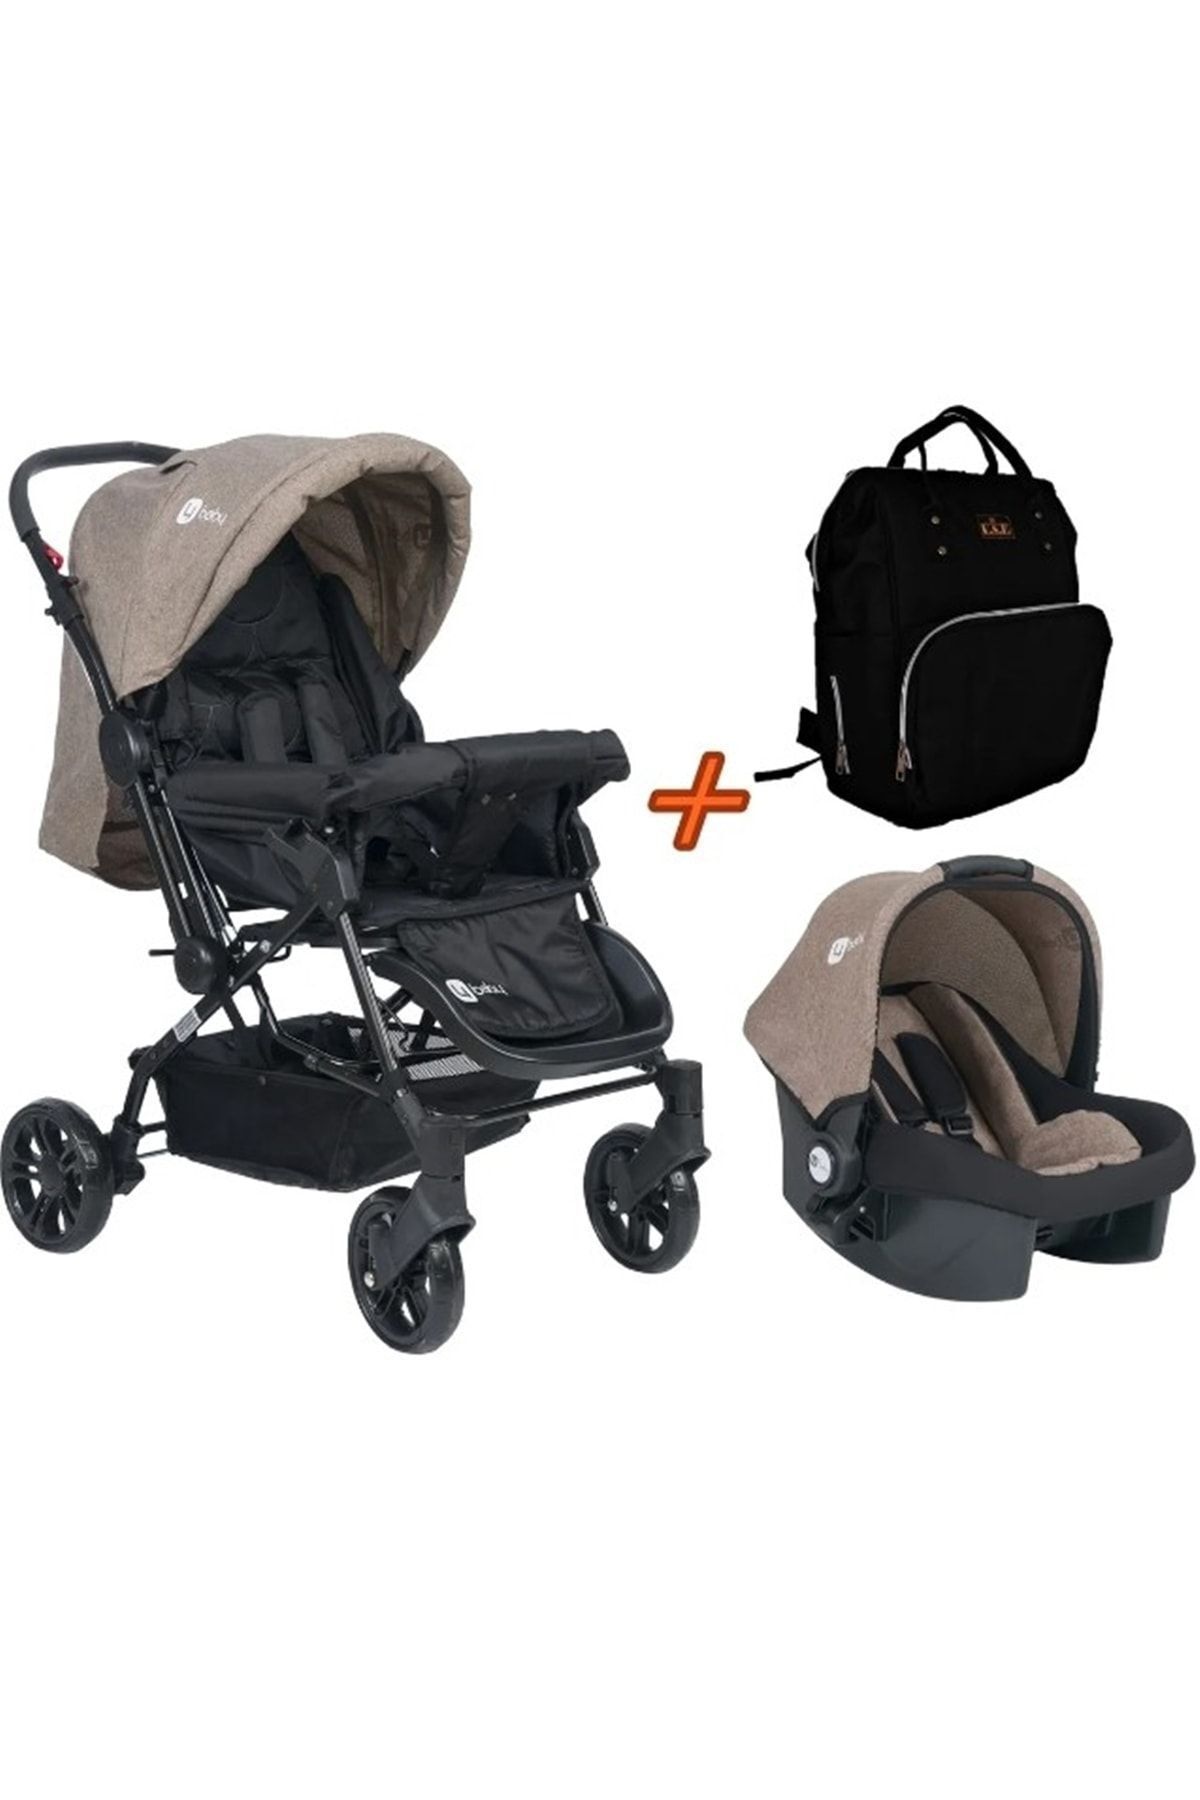 USF Travel Sistem Çift Yönlü Bebek Arabası 4 Baby Set